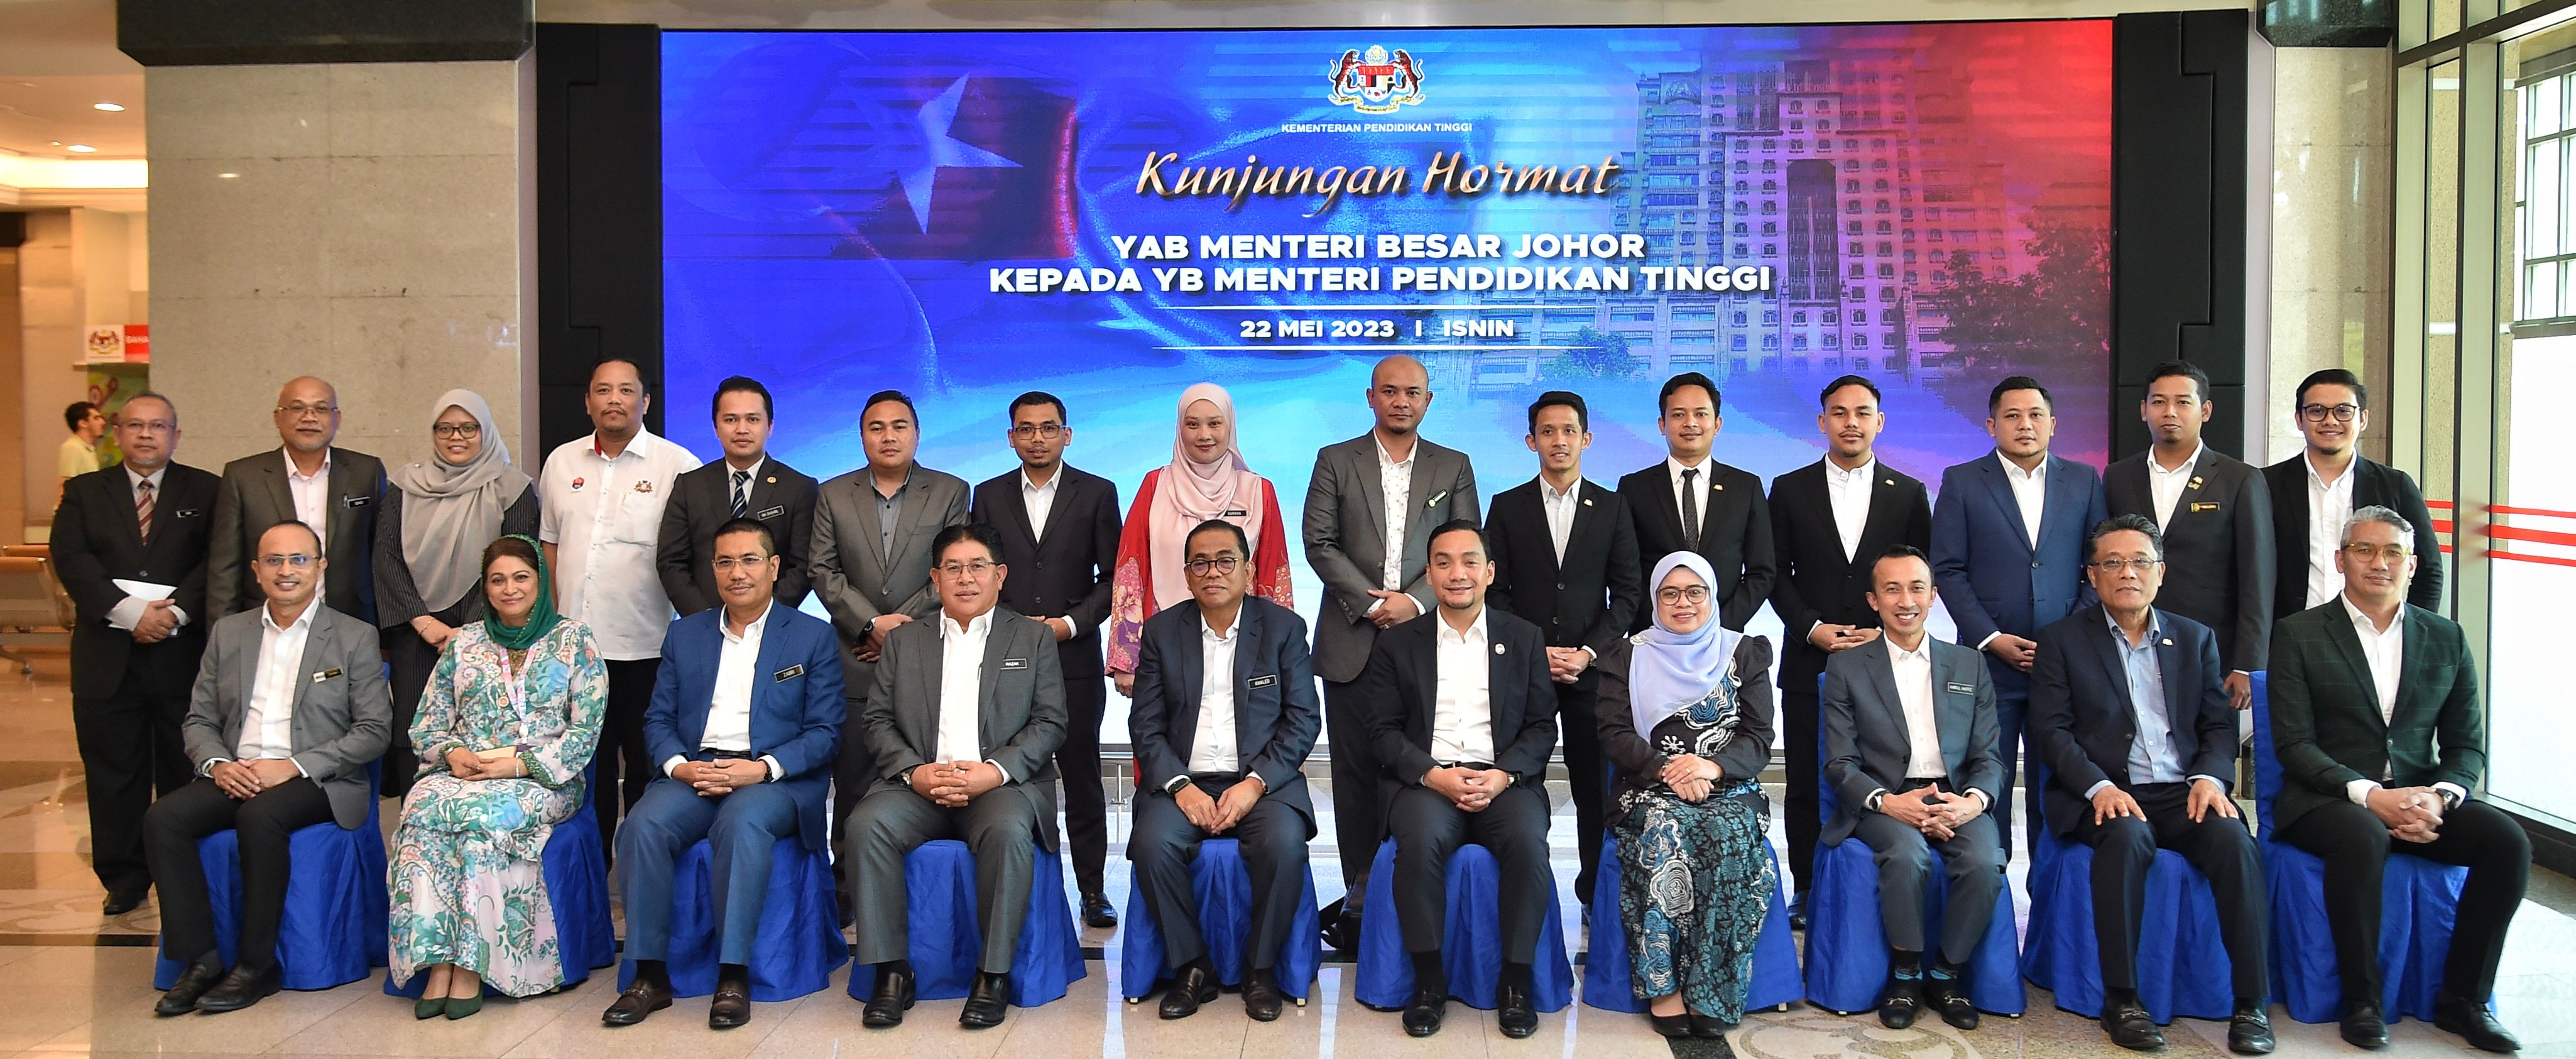 KPT Dan Kerajaan Johor Sepakat Perkasa Pendidikan Tinggi Negara